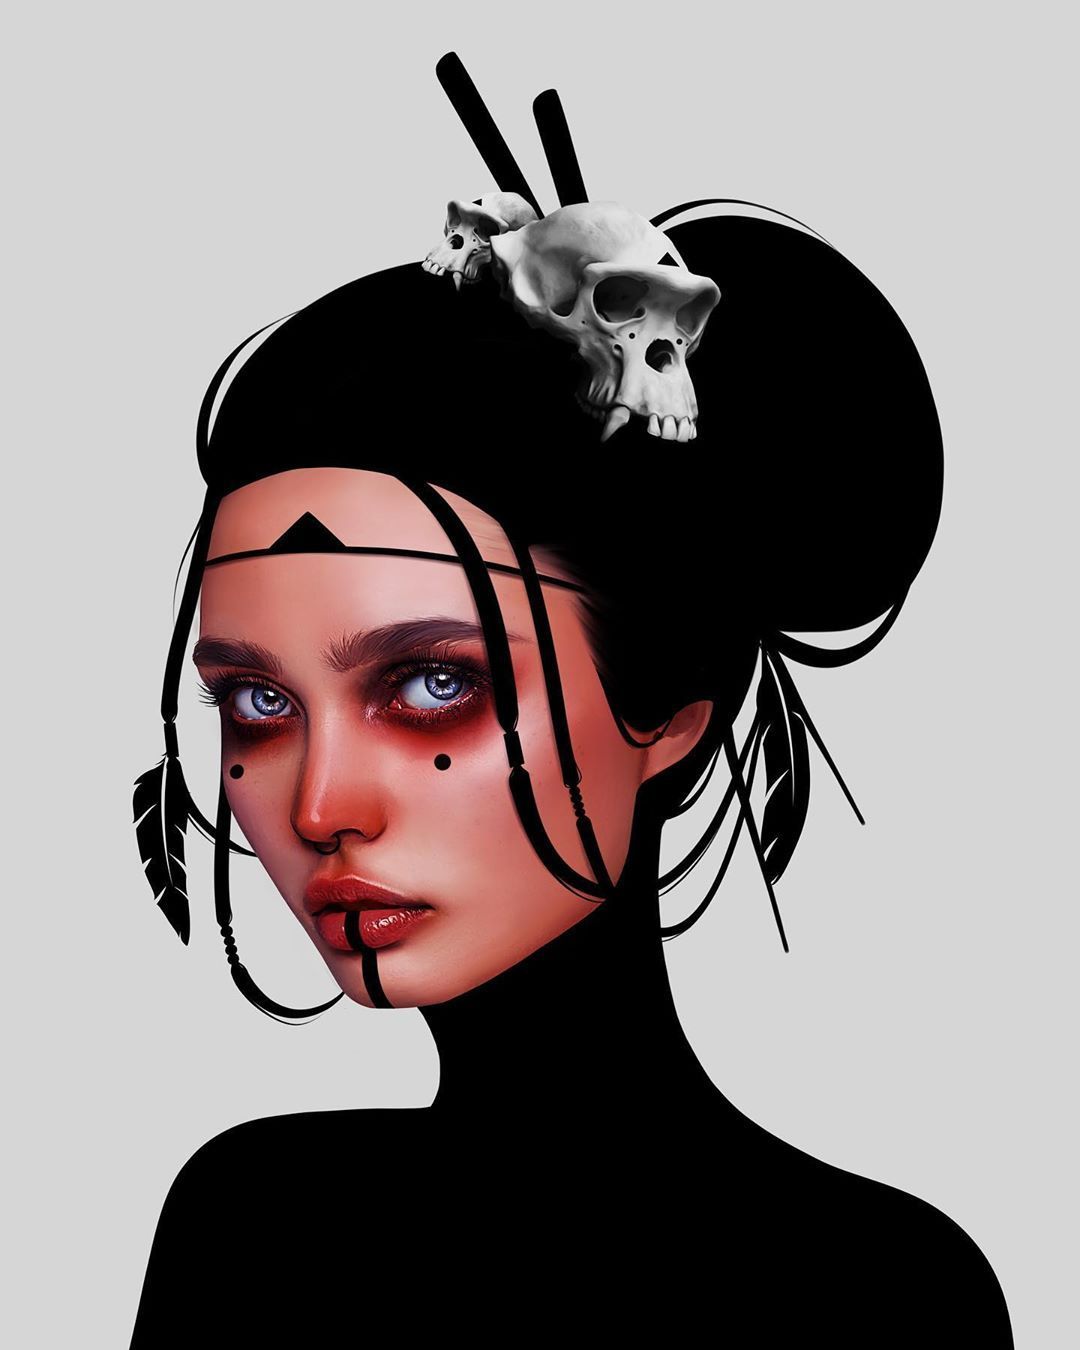 General 1080x1350 digital art women model simple background looking at viewer black hair makeup skull portrait